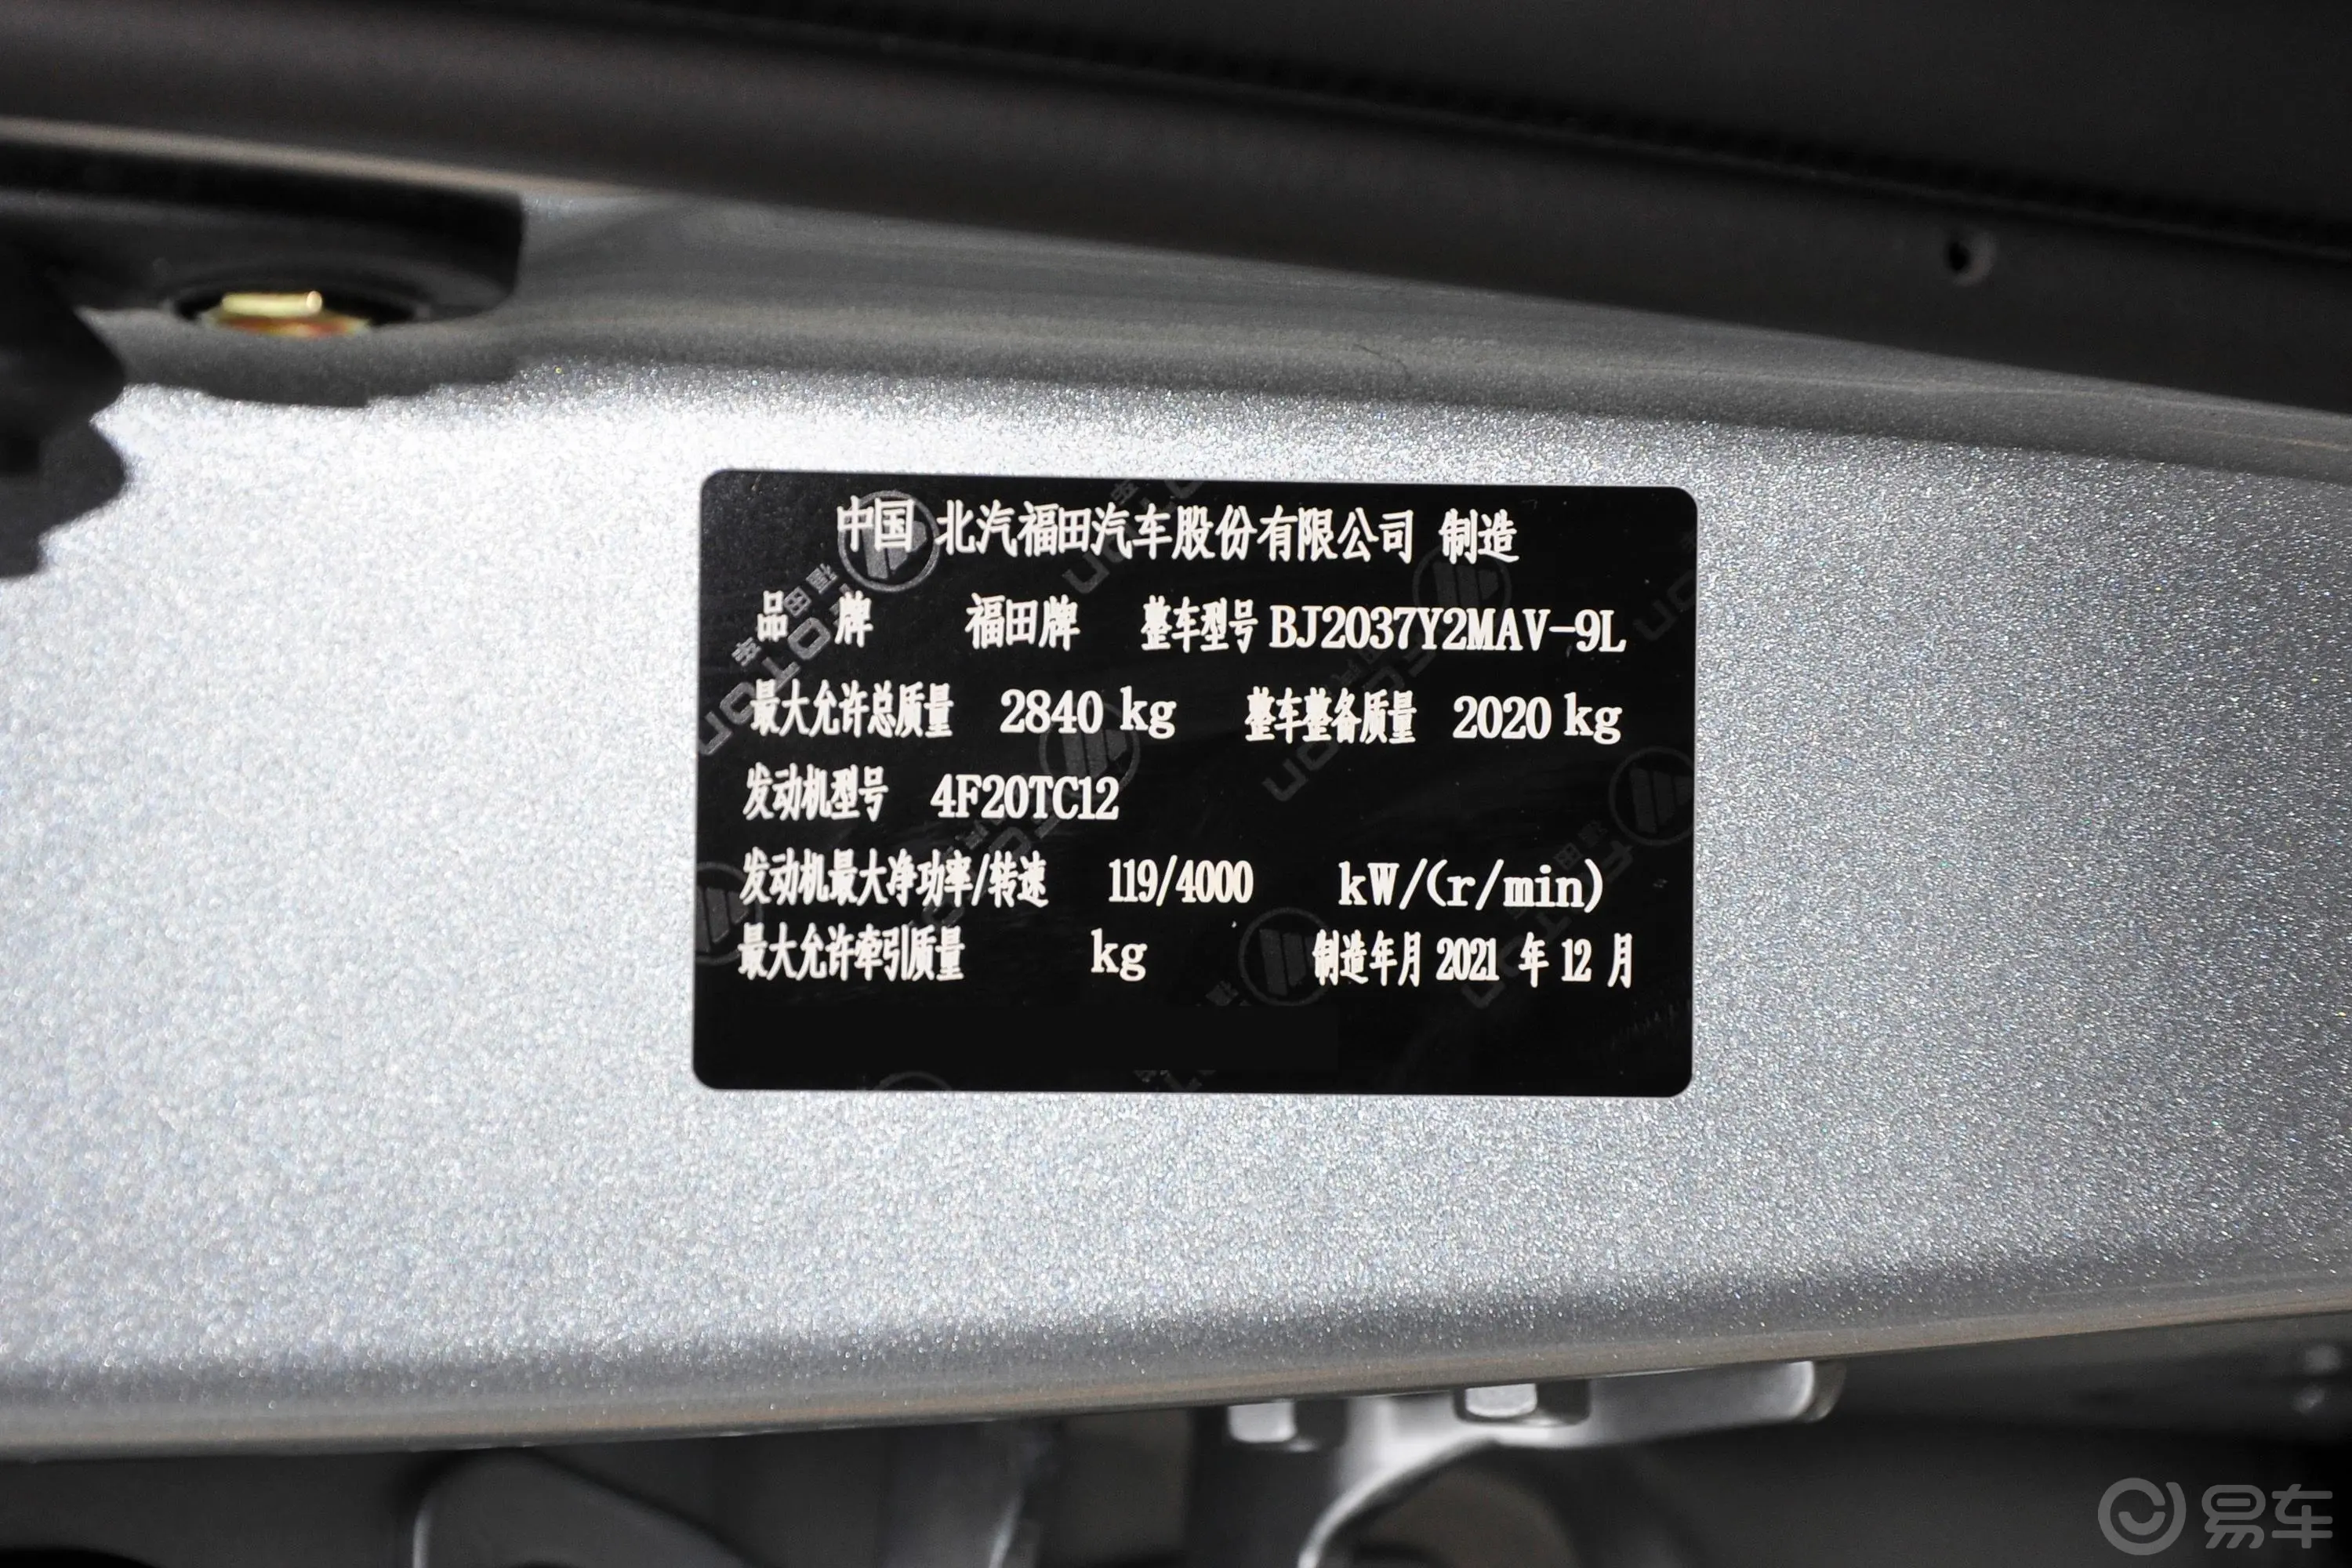 福田征服者52.0T 自动四驱长轴武林至尊 柴油车辆信息铭牌